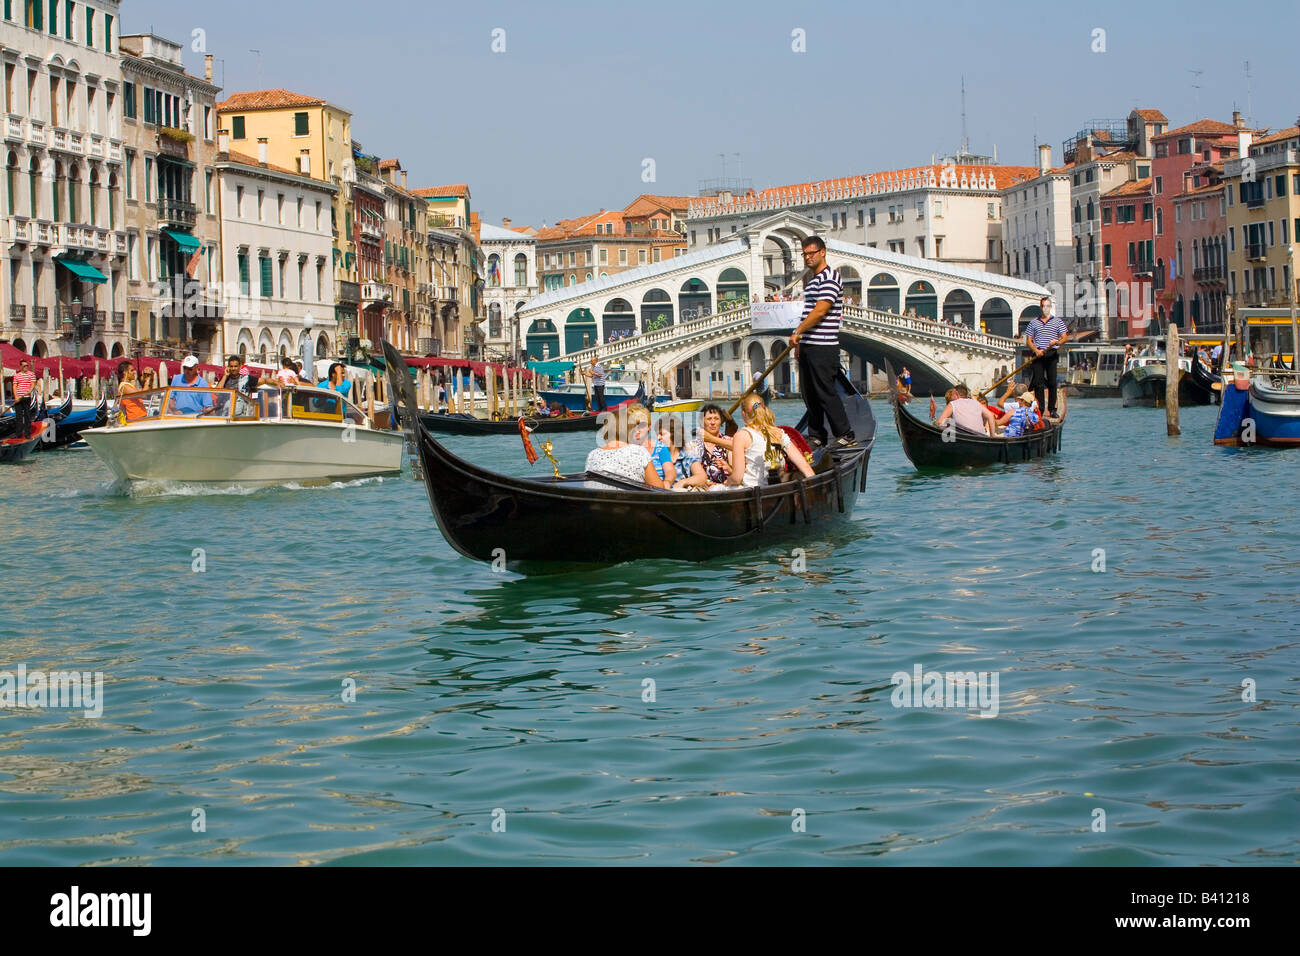 The Rialto Bridge and Grand Canal in Venice Stock Photo